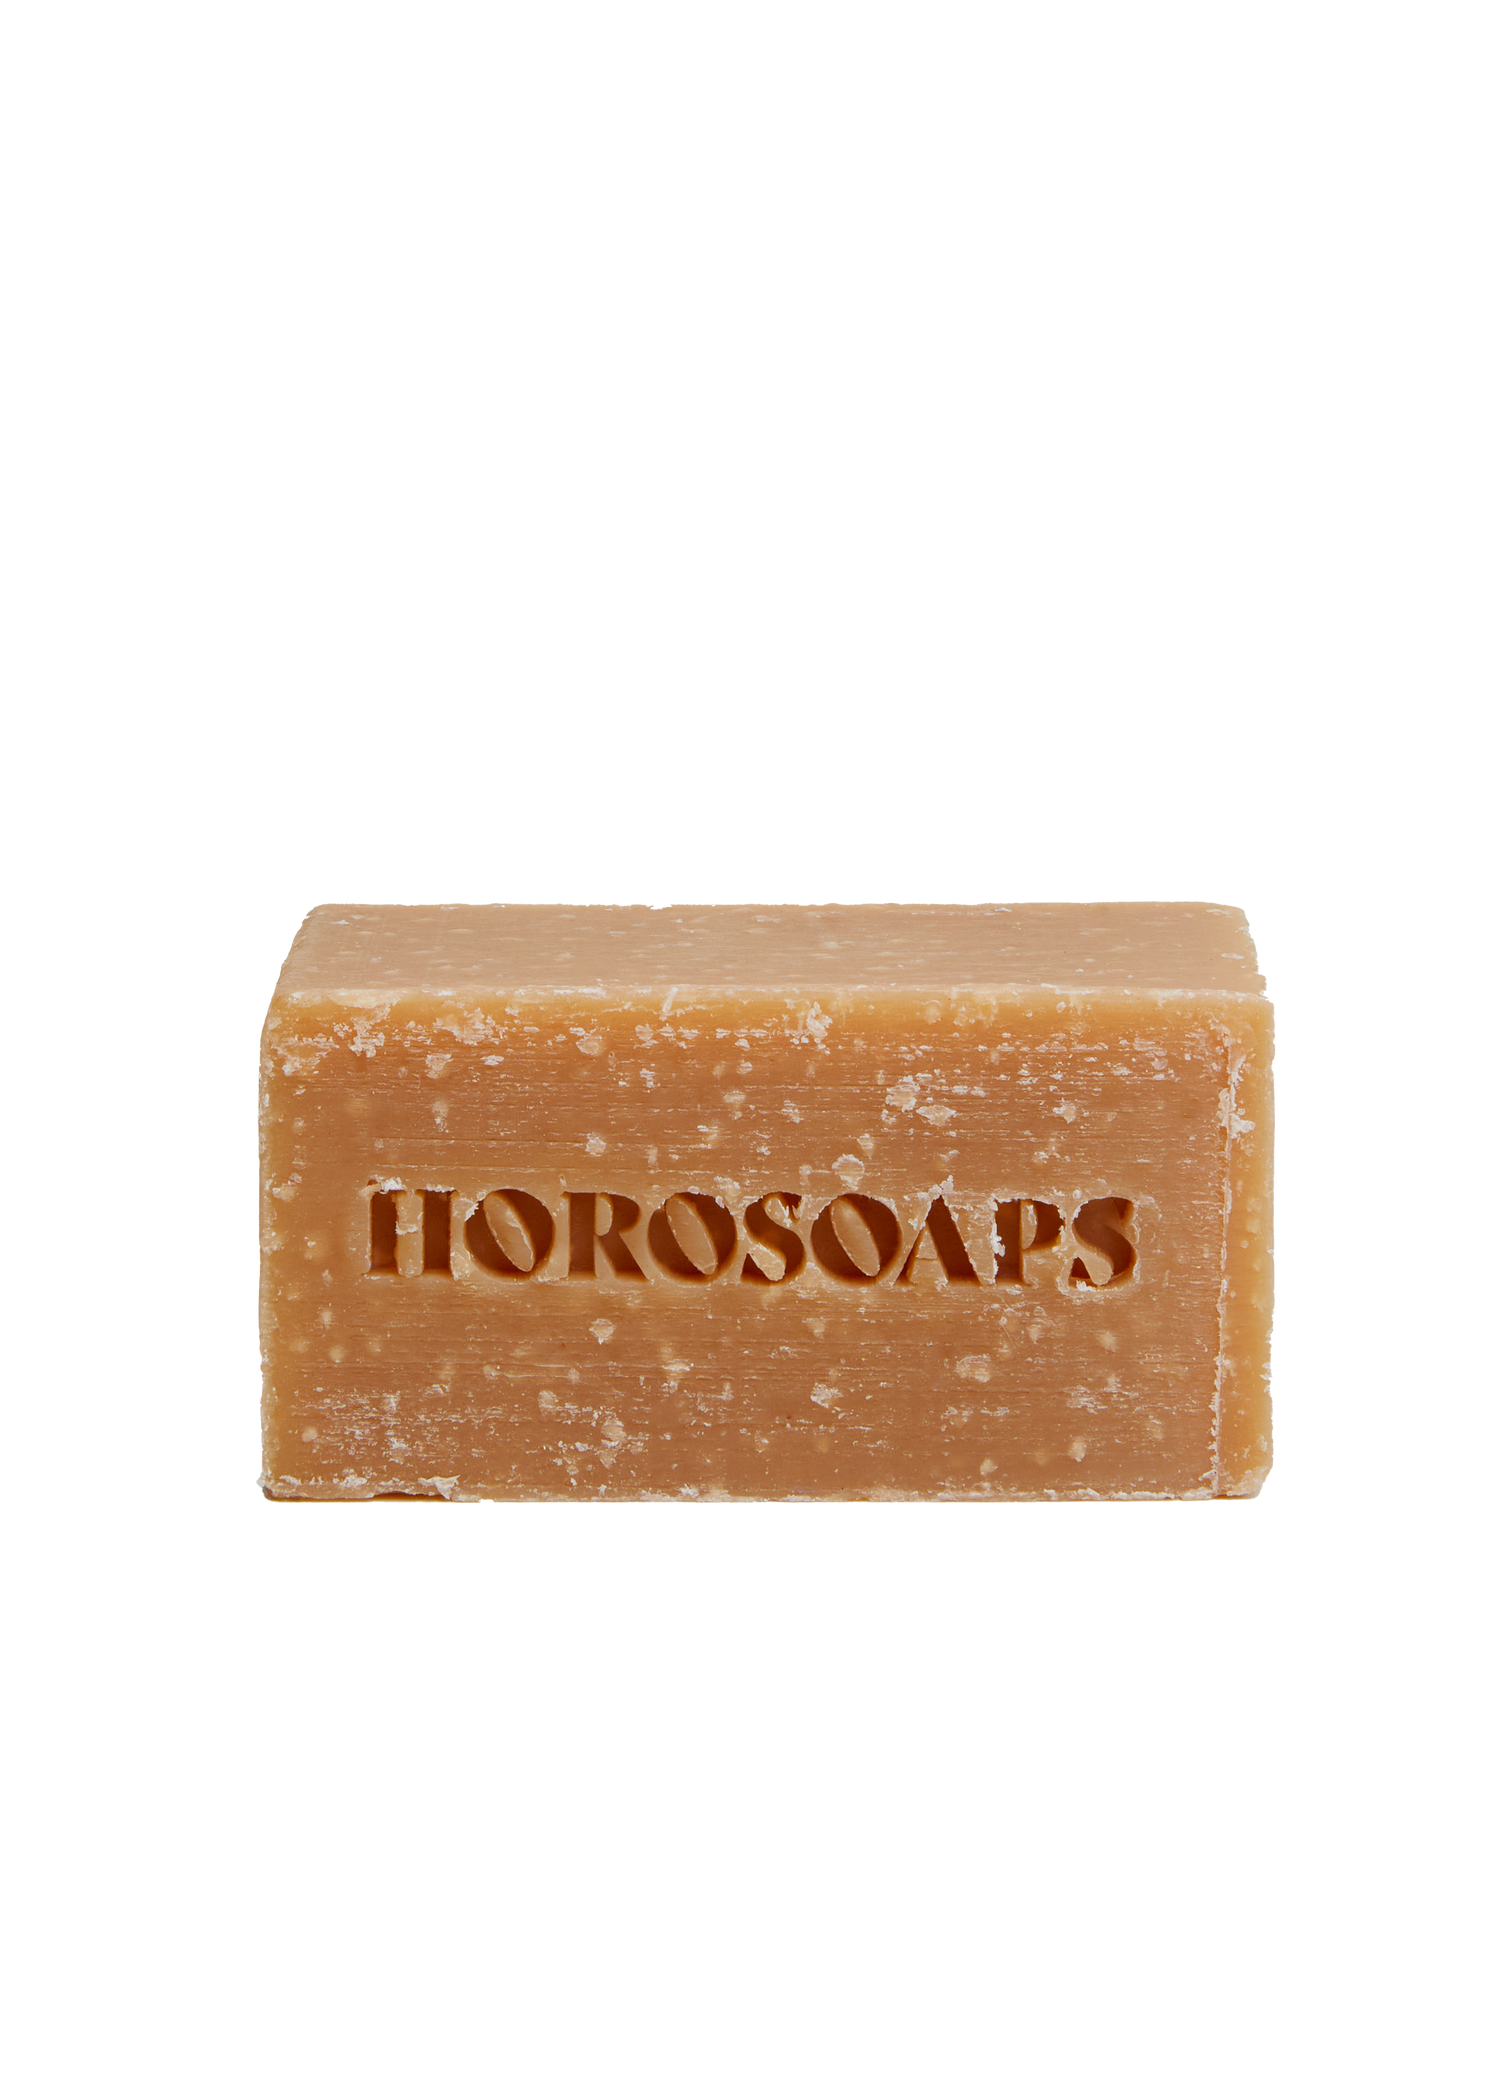 Libra Soap Bar